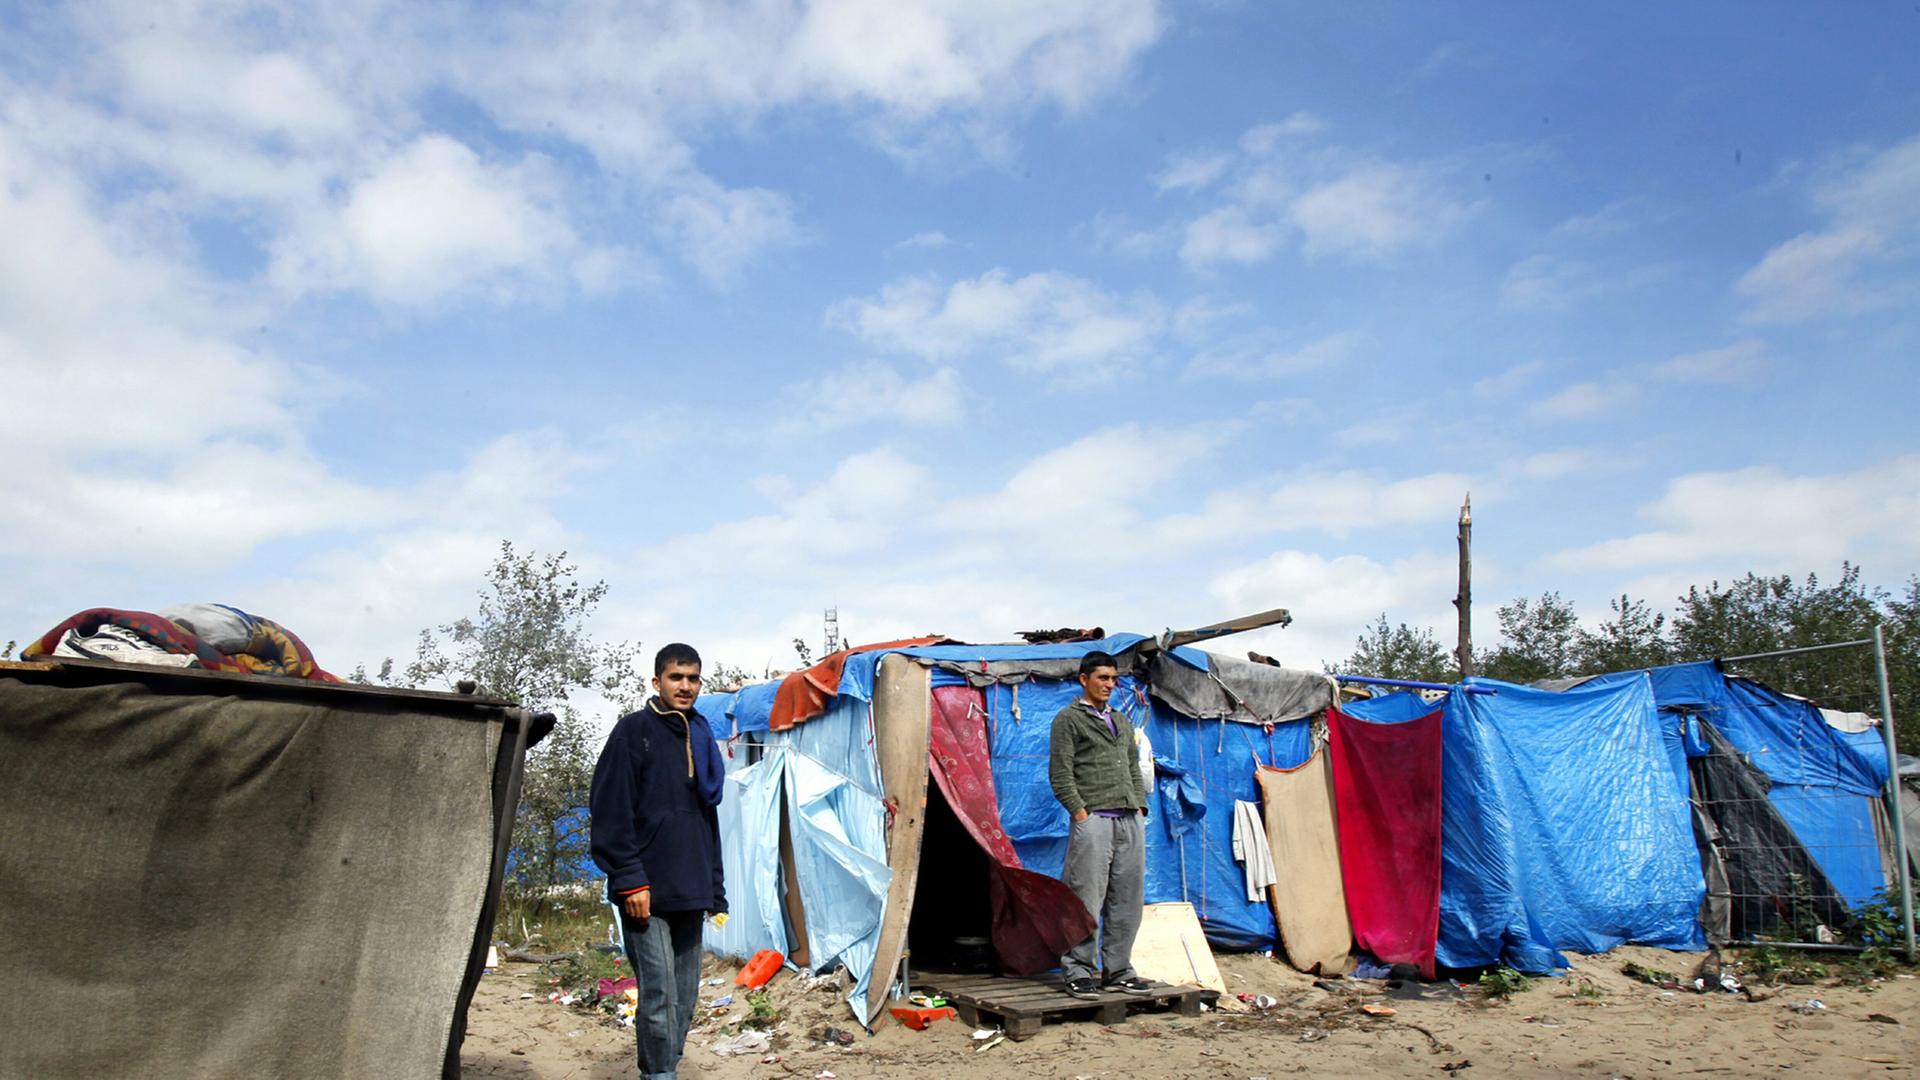 Afghanische Flüchtlinge am 17. September 2009 in einem improvisierten Lager in der Nähe von Calais in Frankreich.